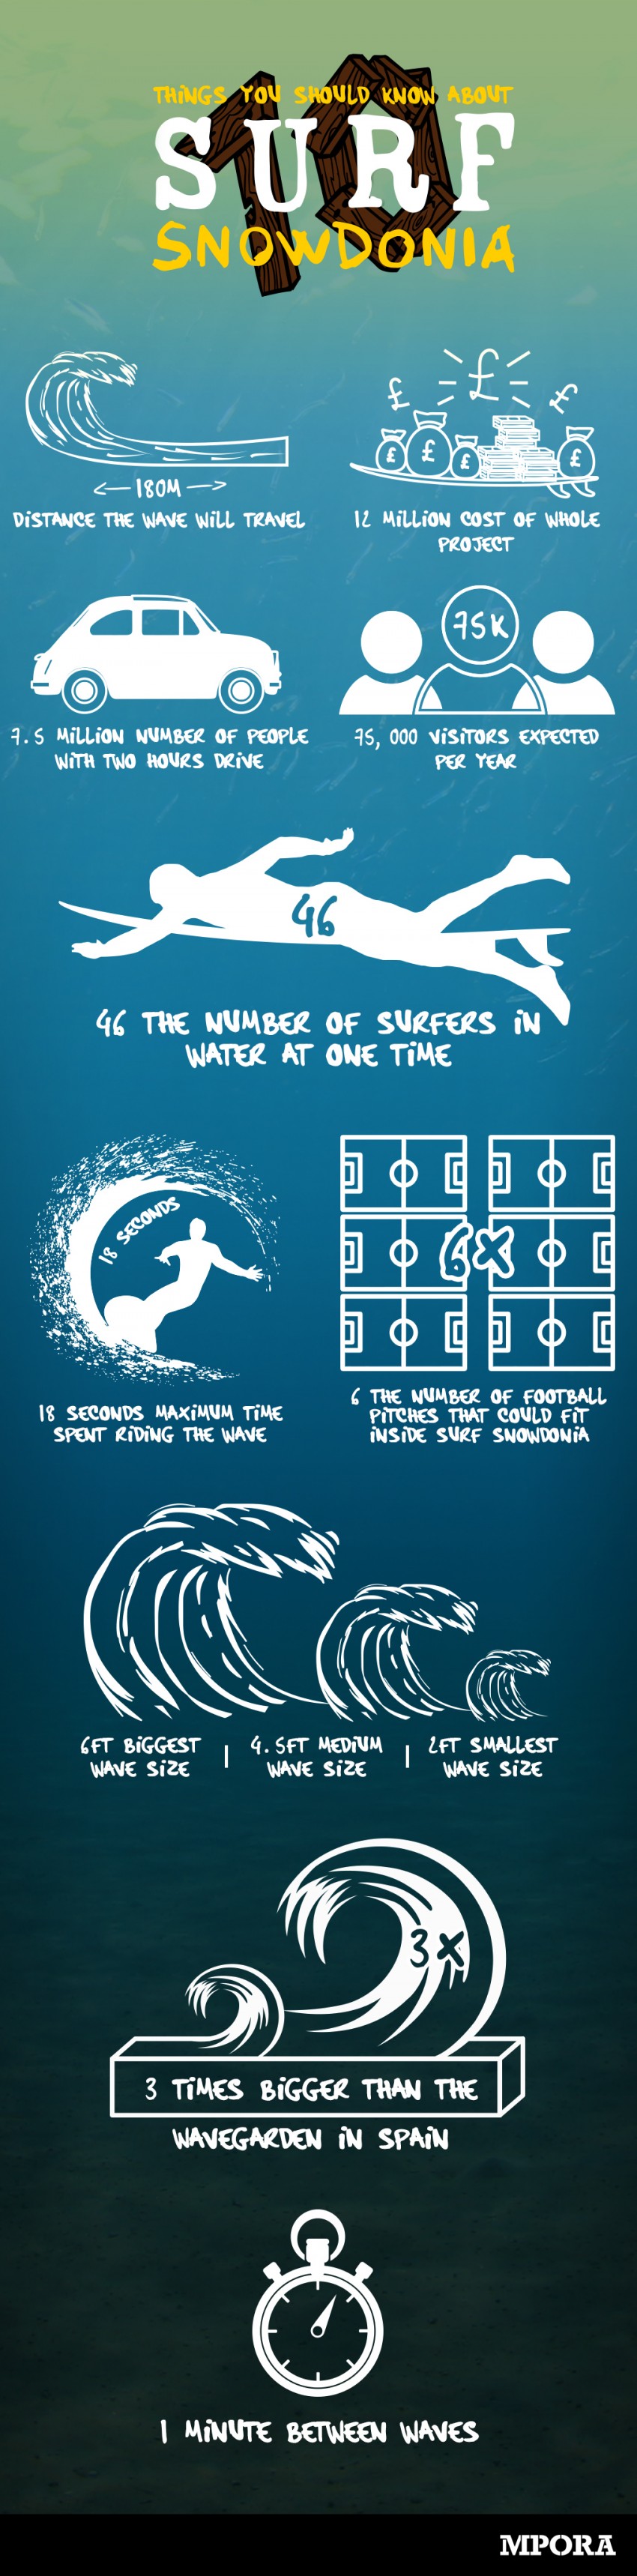 Surf Snowdonia Wavegarden Infographic | Surf Park Central